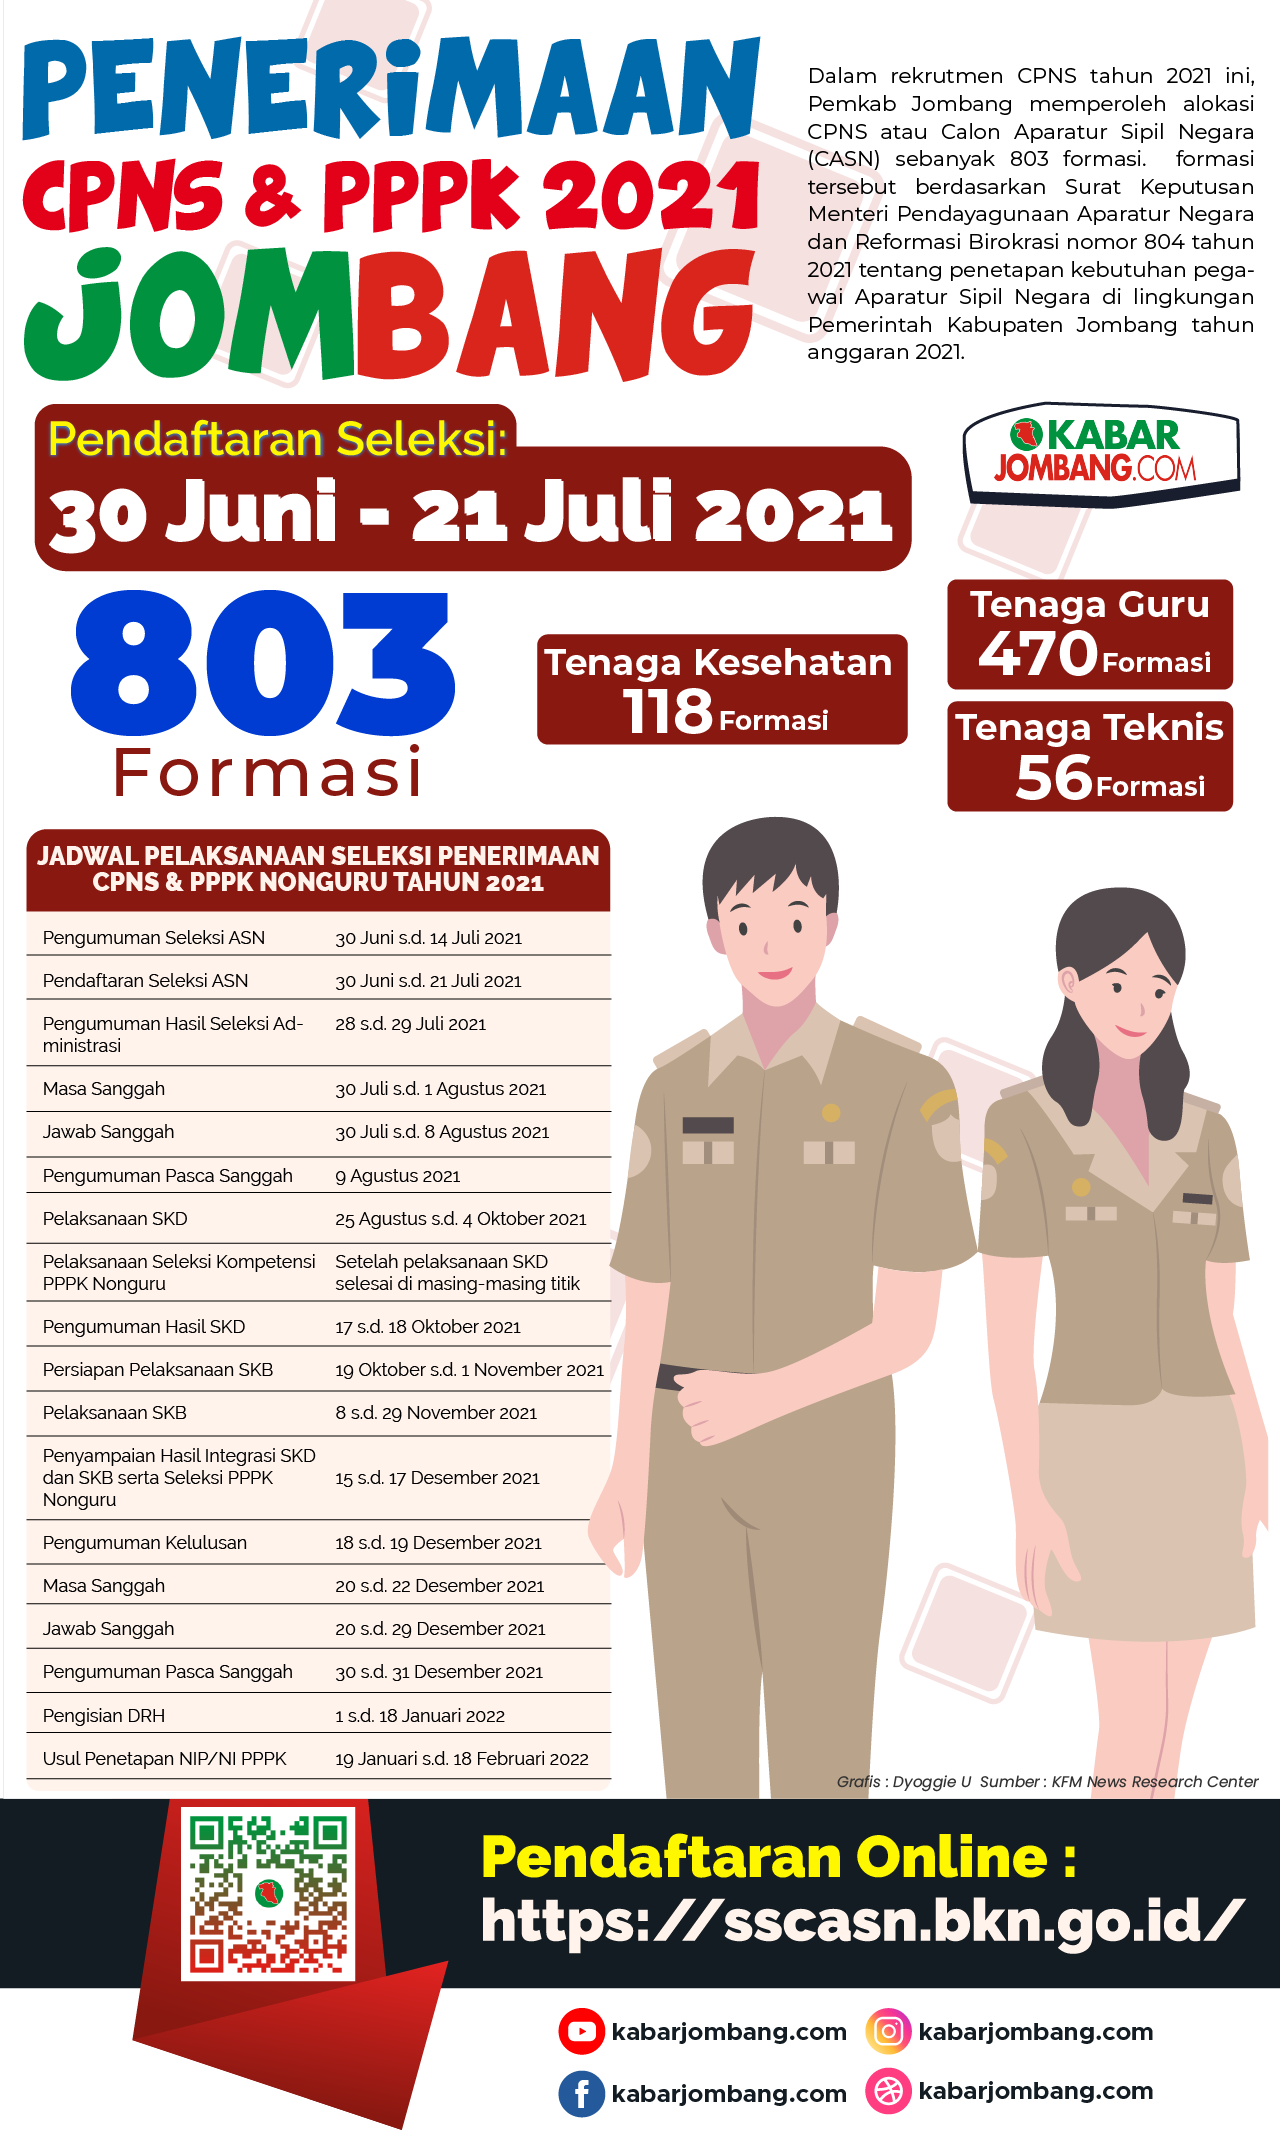 Formasi Penerimaan CPNS dan PPPK 2021 Jombang 